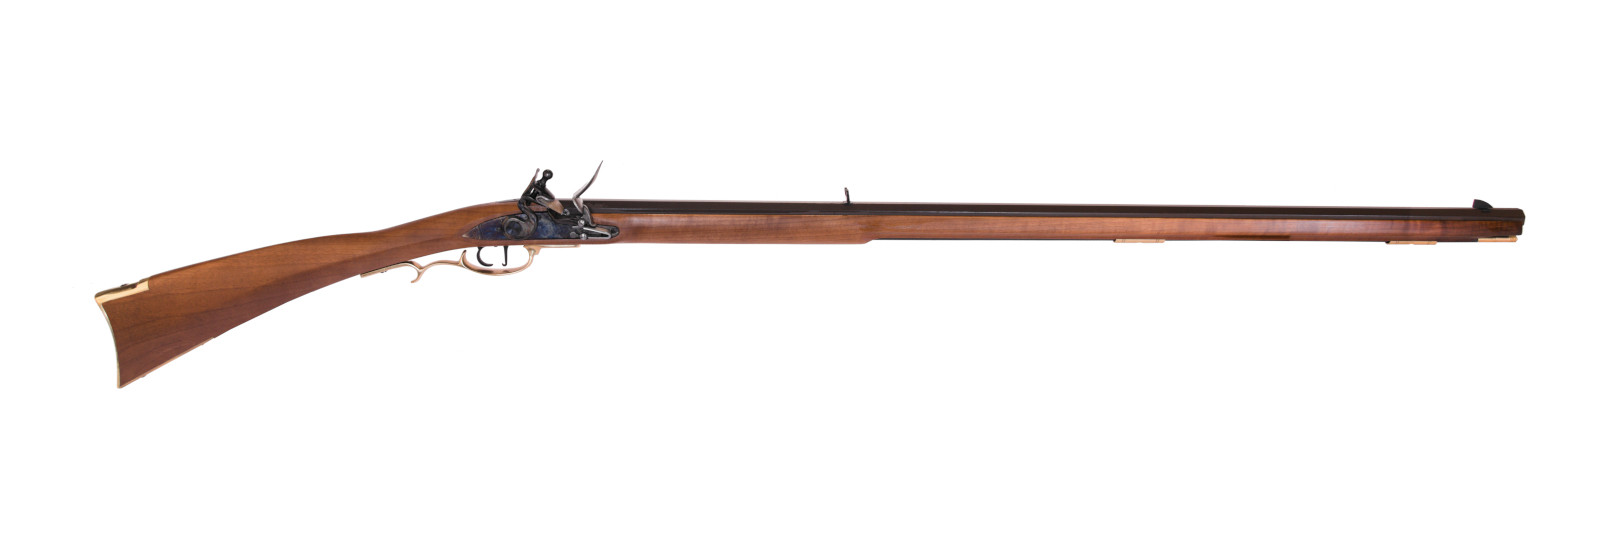 Frontier Rifle flintlock model